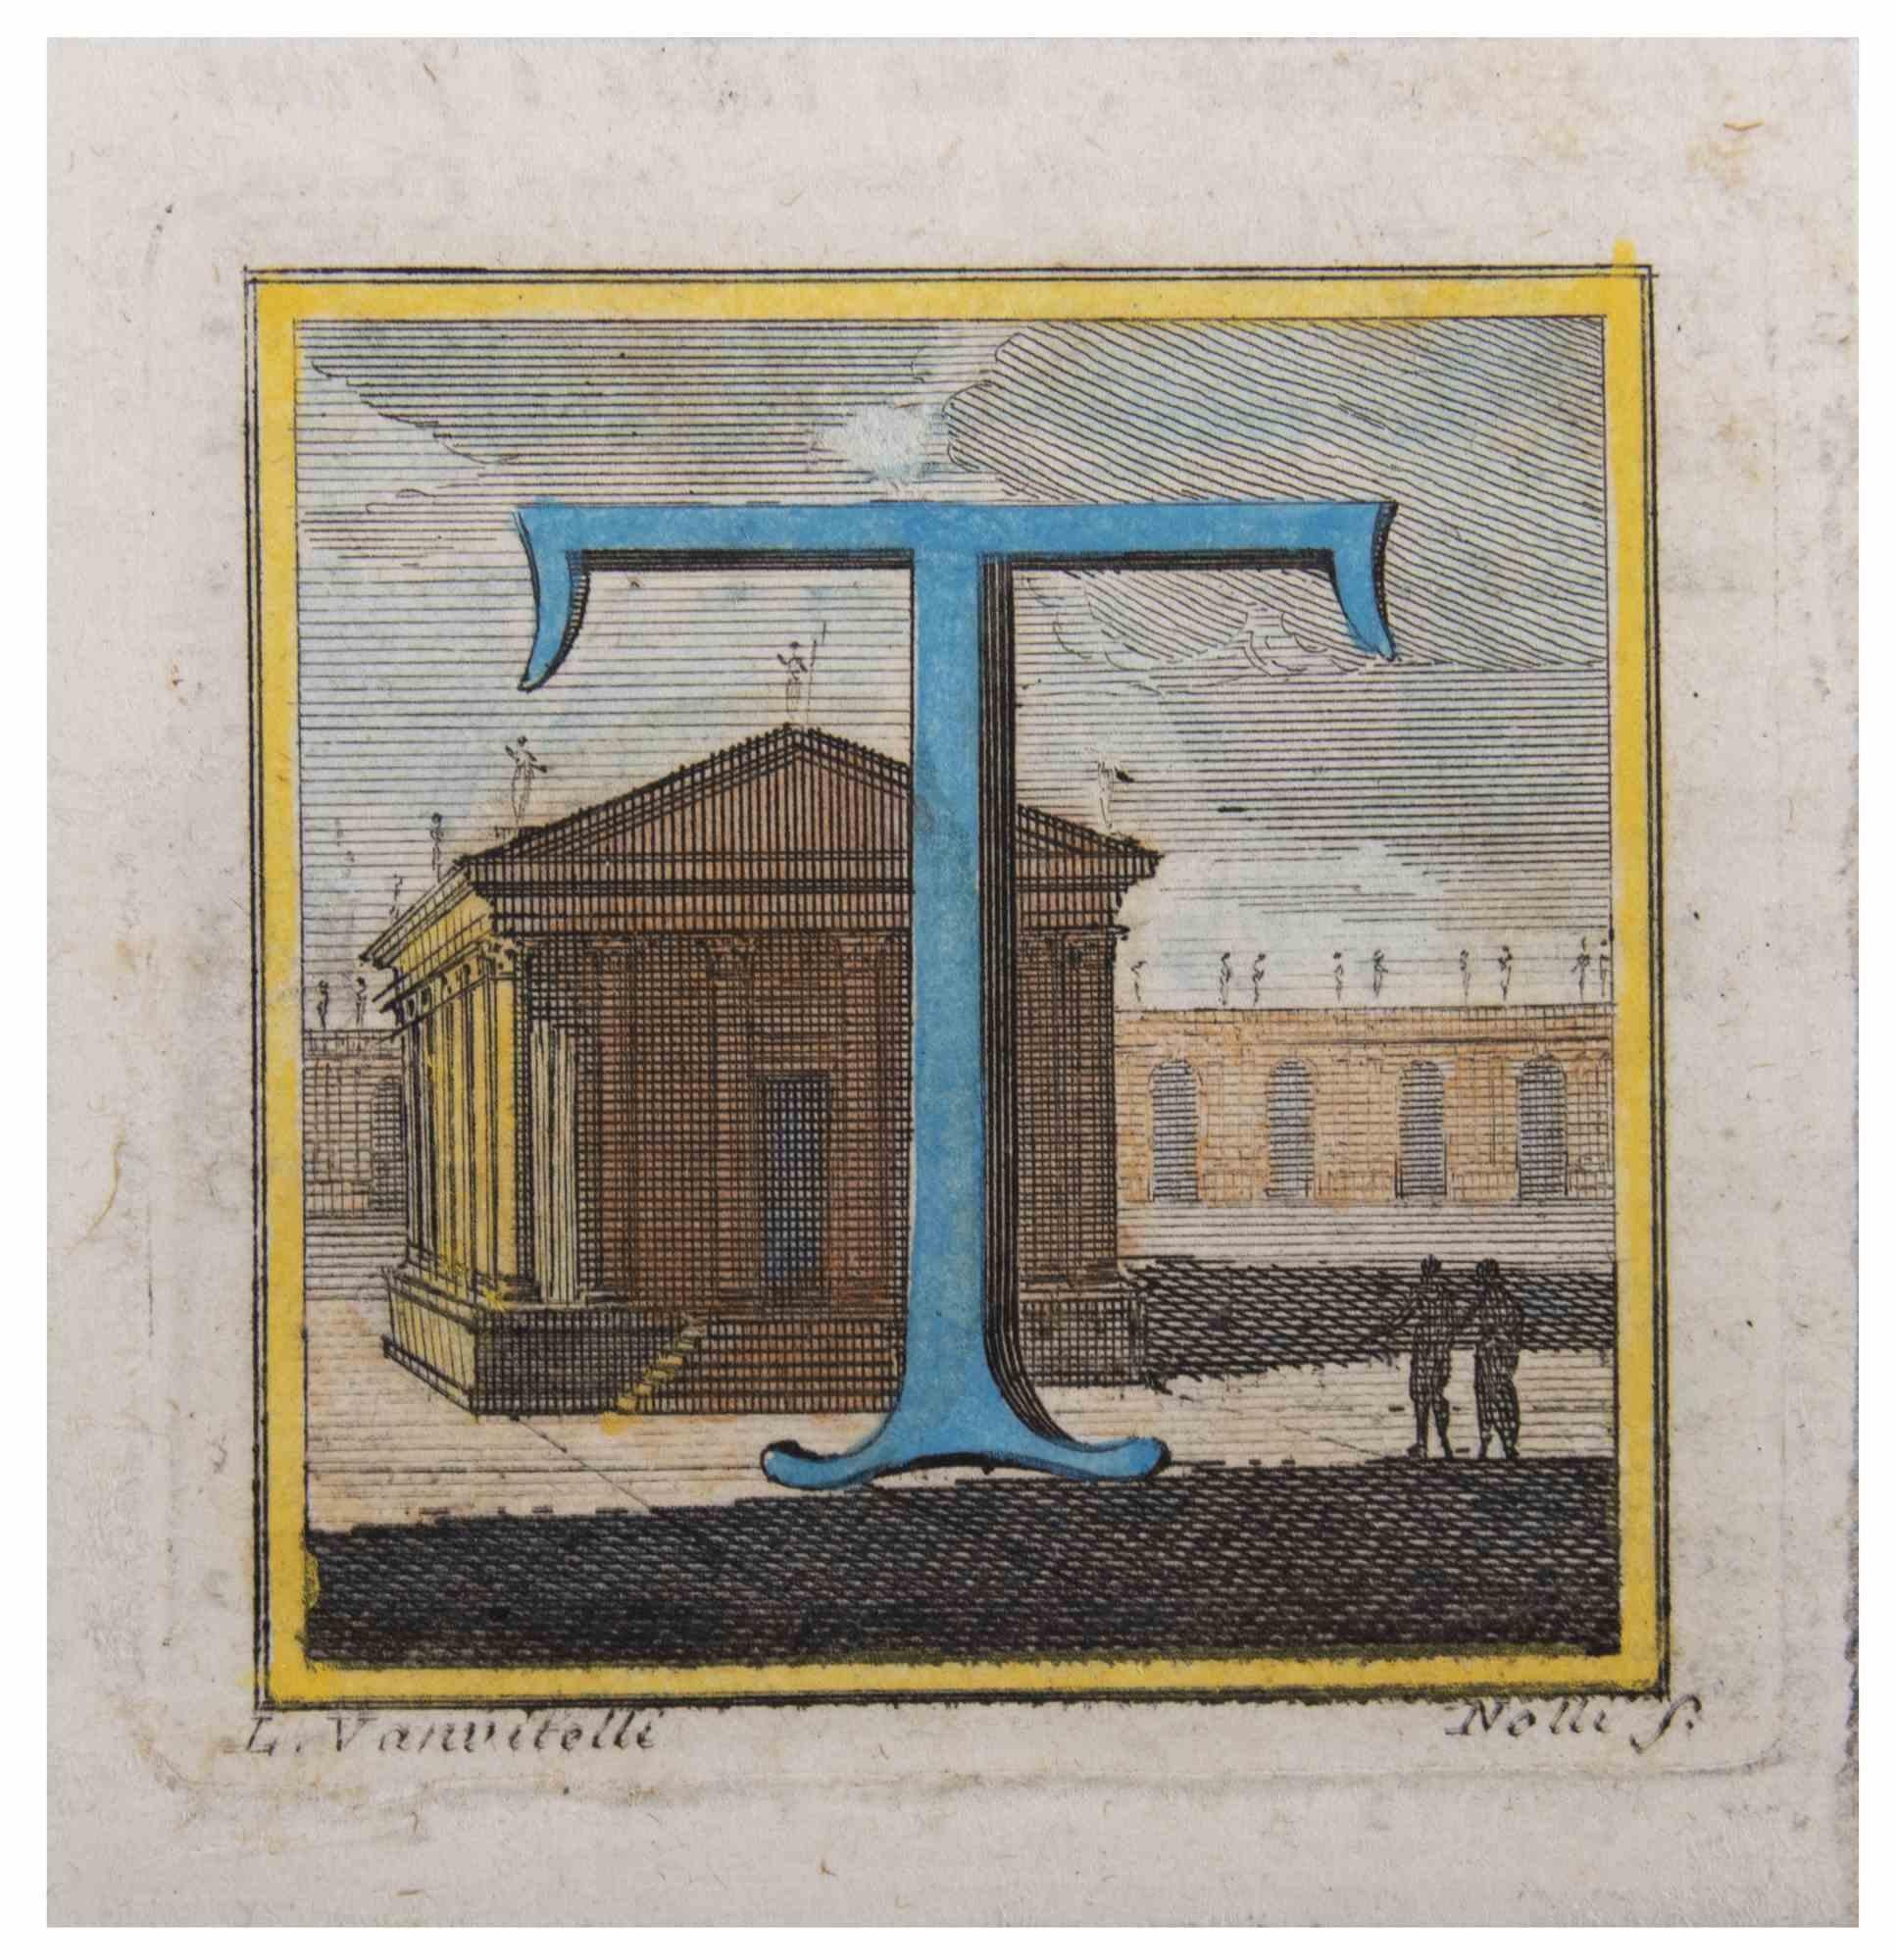 La lettre AT&T est une gravure réalisée par Luigi Vanvitelli, artiste du XVIIIe siècle.

Bonnes conditions.   

La gravure appartient à la suite d'estampes "Antiquités d'Herculanum exposées" (titre original : "Le Antichità di Ercolano Esposte"), un